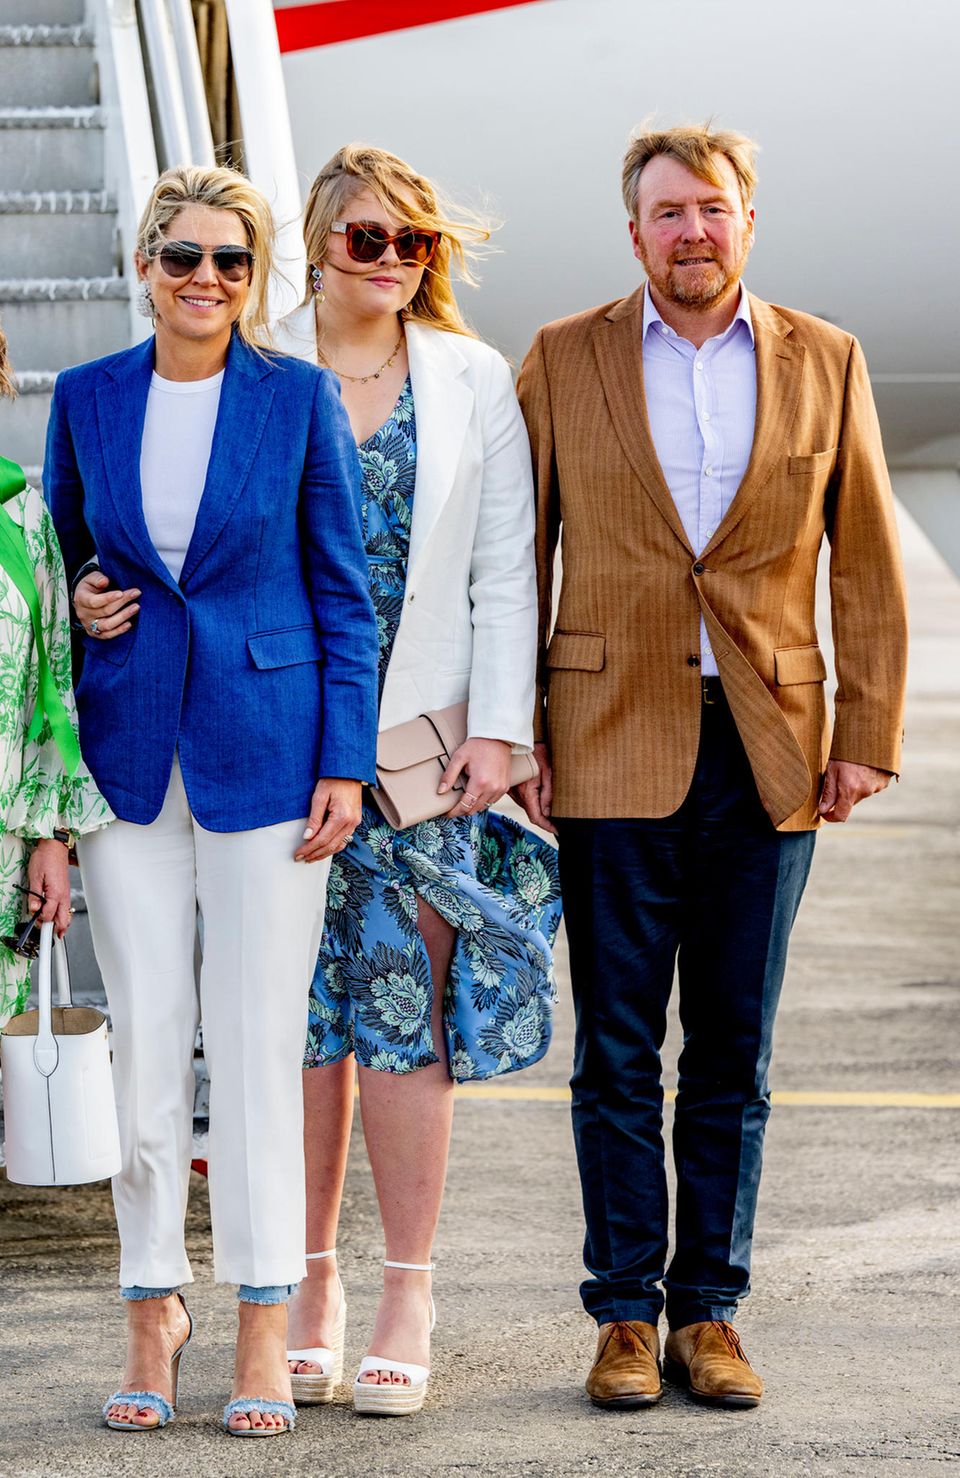  Königin Máxima, Prinzessin Amalia und König Willem-Alexander bei ihrer Ankunft in der Karibik.